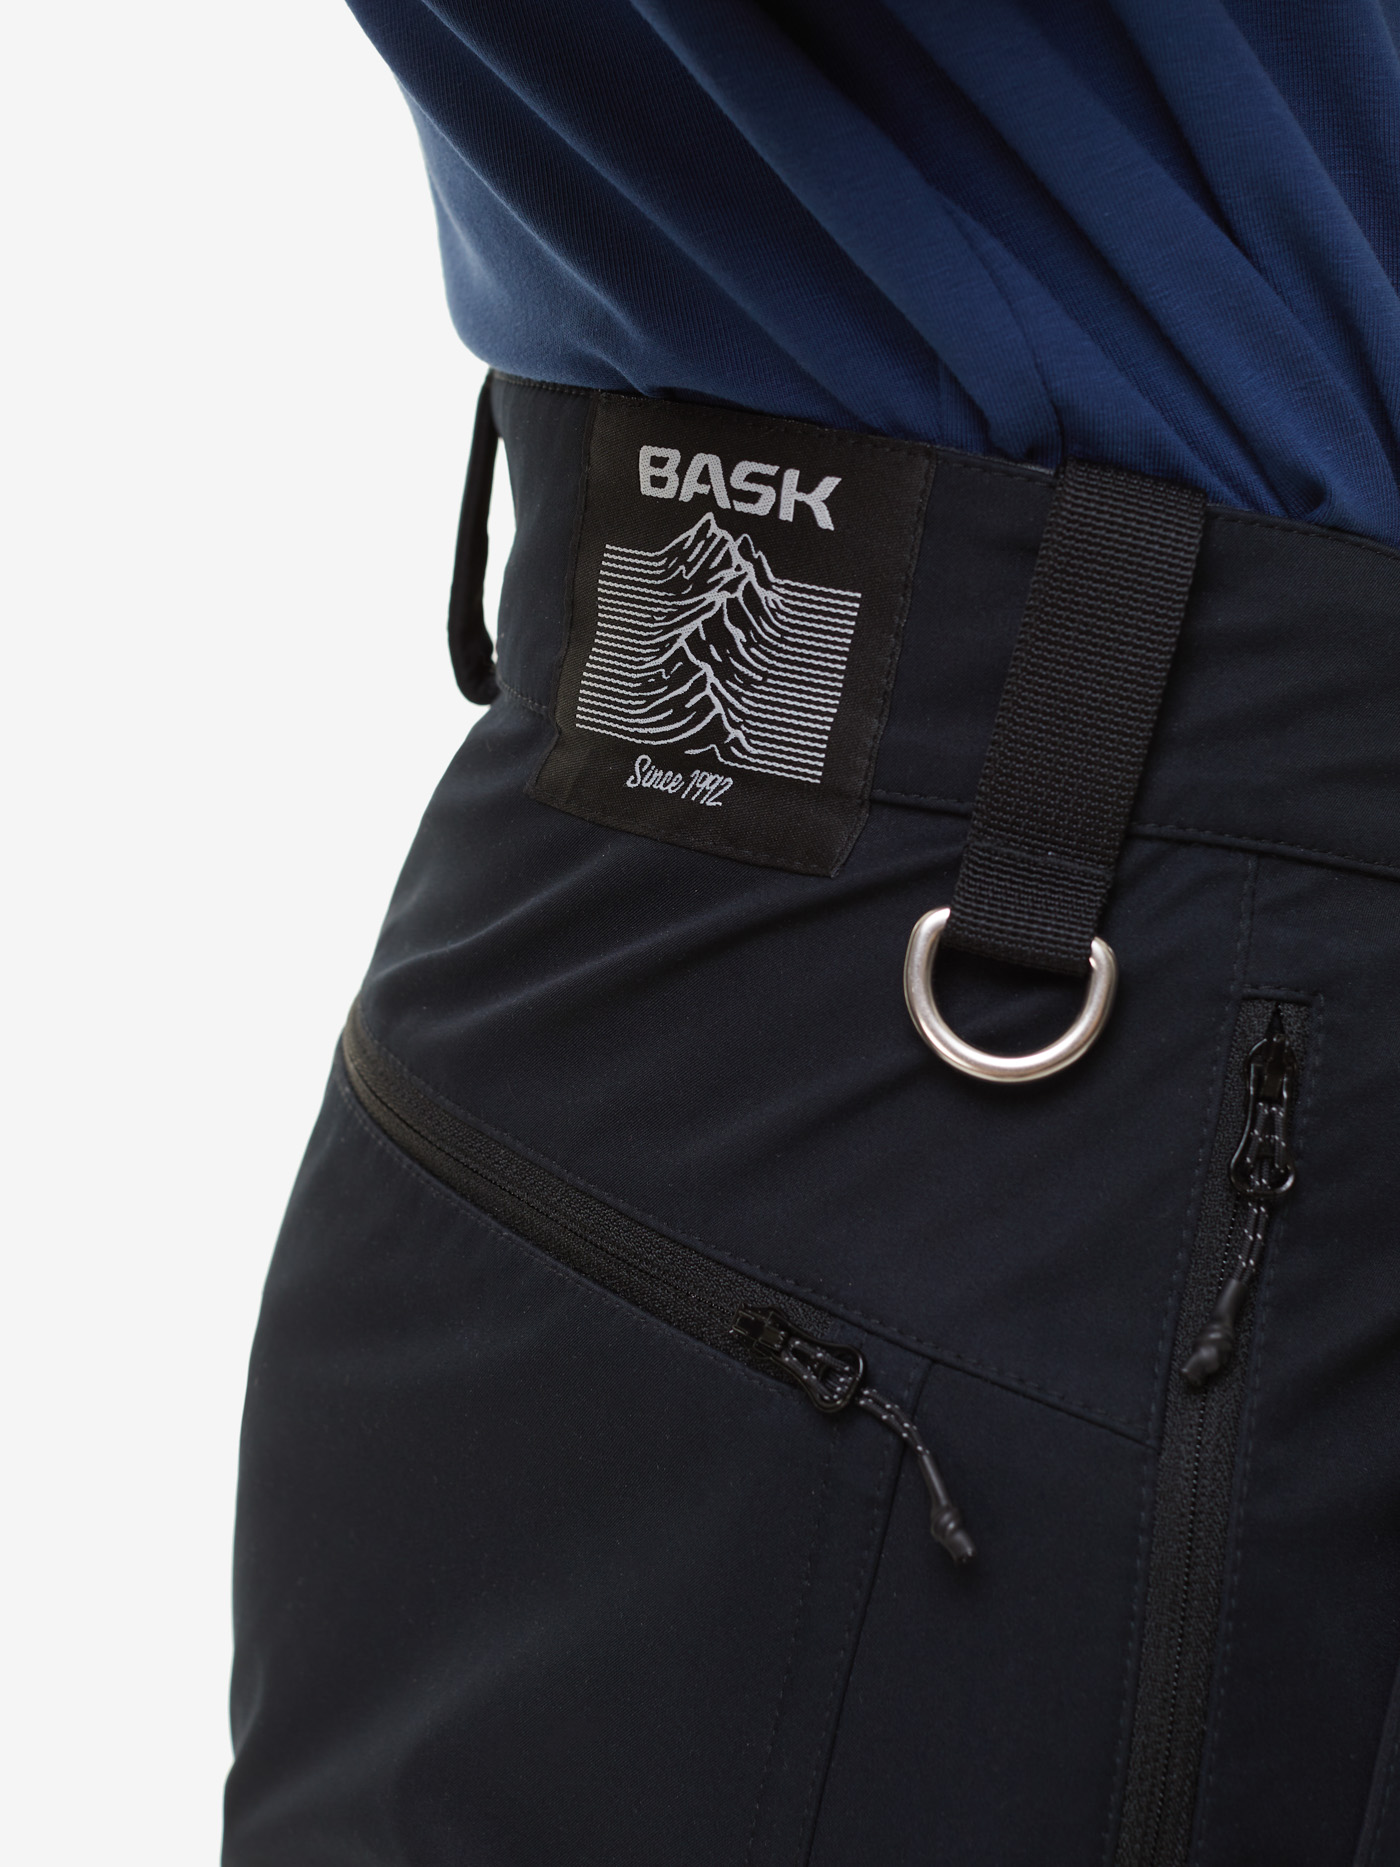 Брюки BASK, размер 50, цвет черный 19150-9009-050 Edge - фото 4